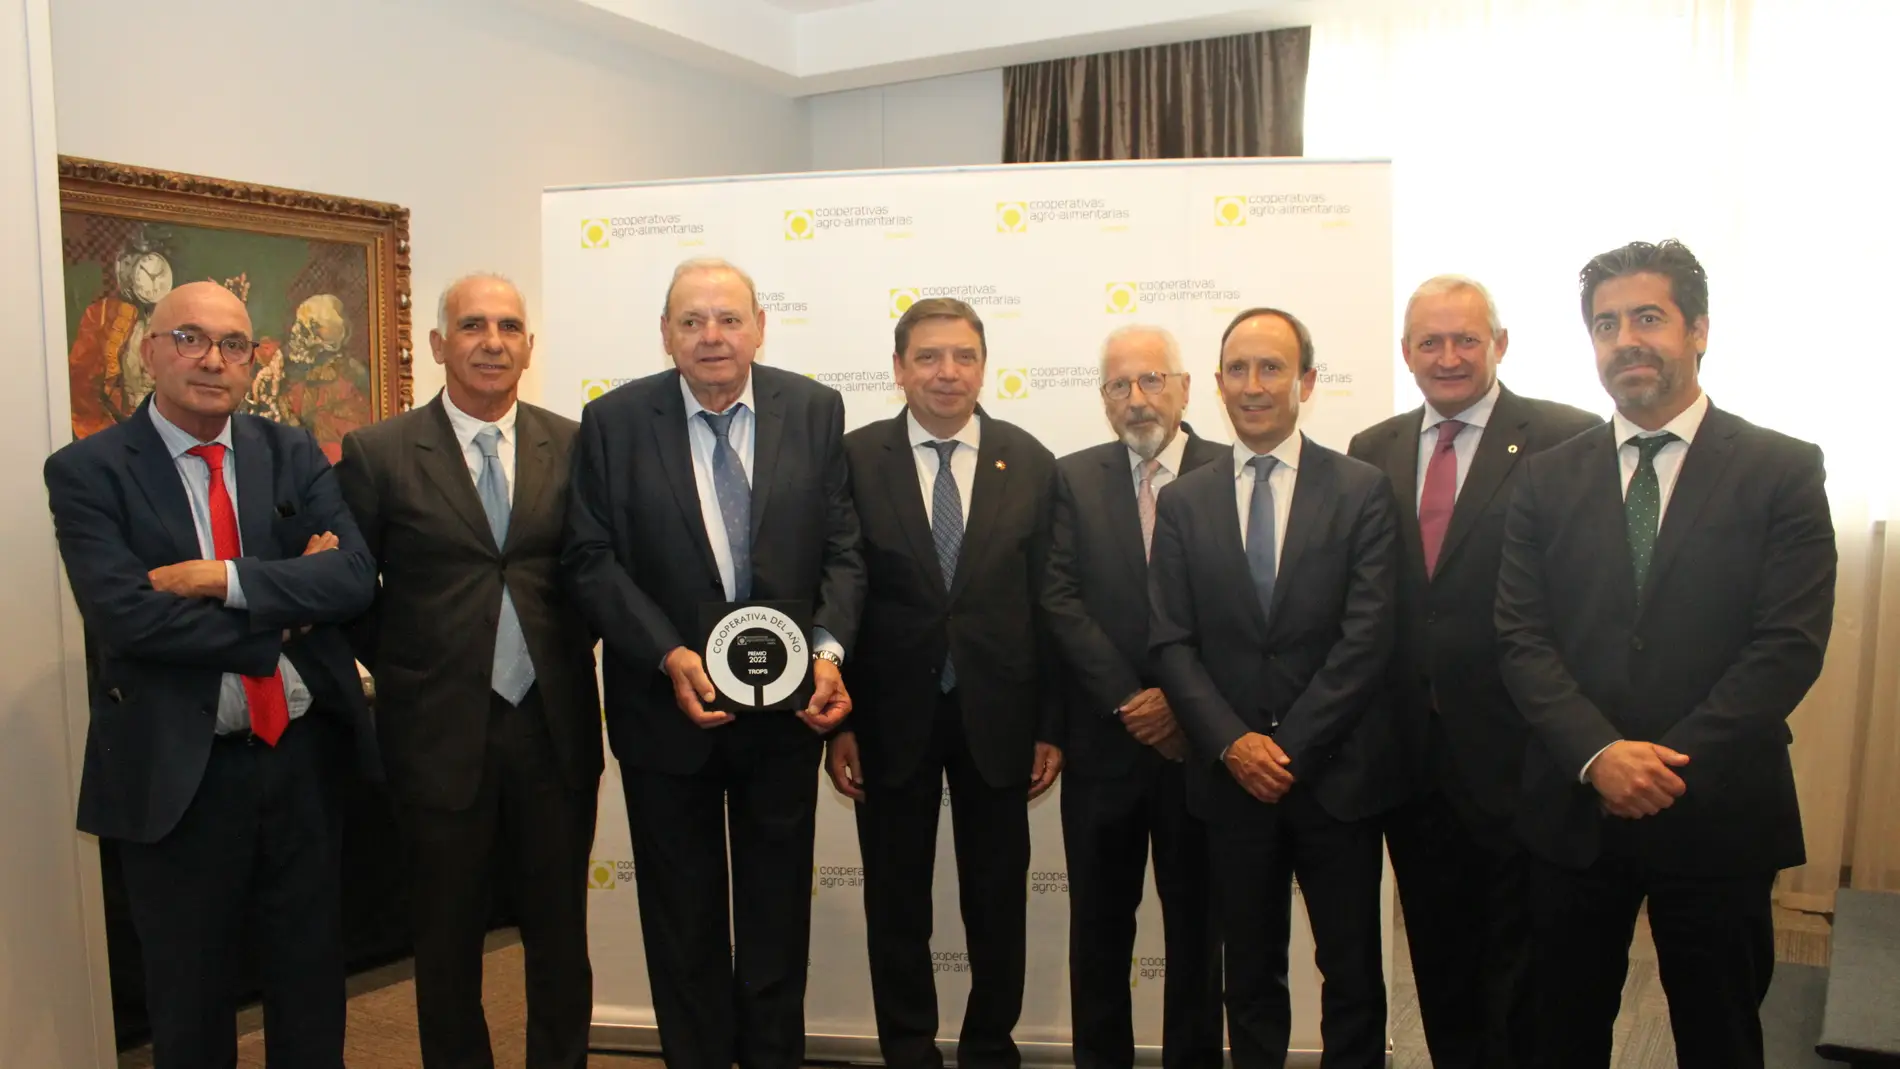 TROPS recibe el premio Cooperativa del Año que otorga Cooperativas Agro-alimentarias de España